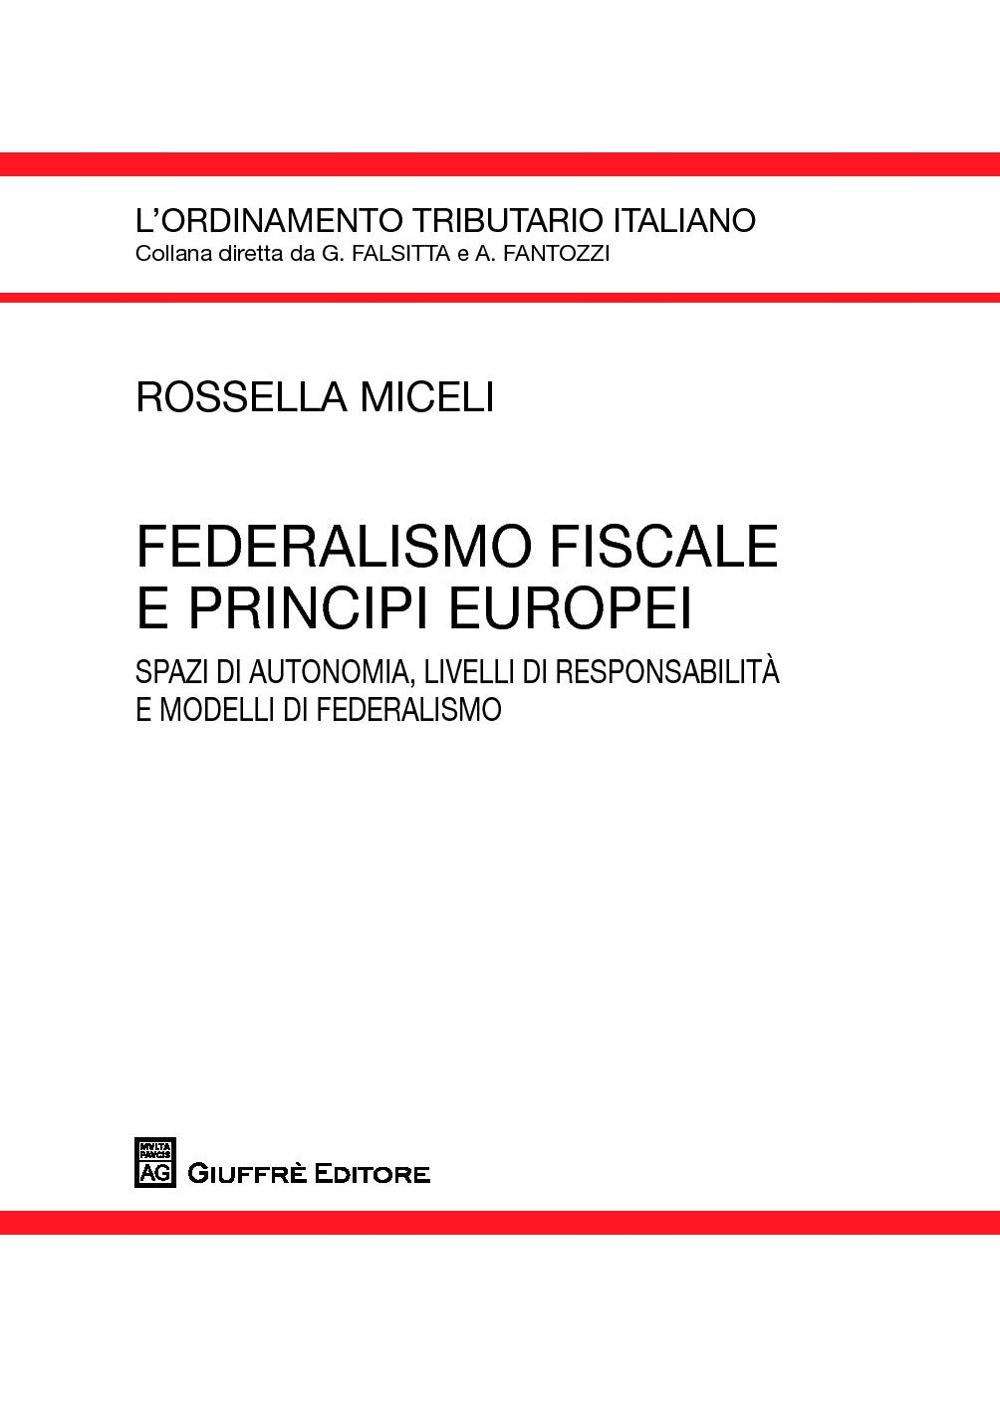 Federalismo fiscale e principi europei. Spazi di autonomia, livelli di responsabilità e modelli di federalismo